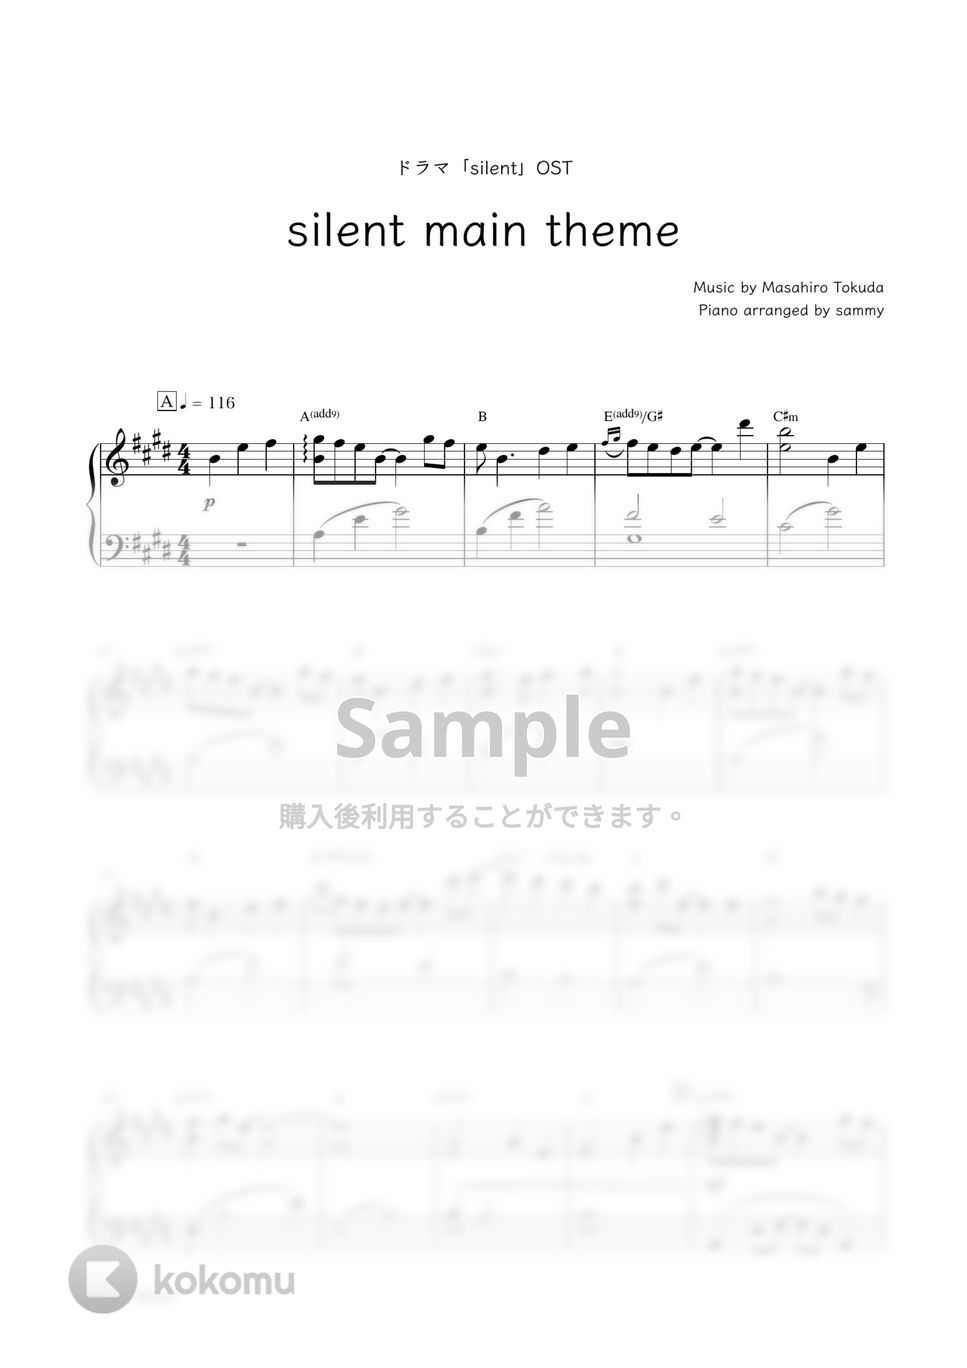 ドラマ『silent』OST - silent main theme by sammy